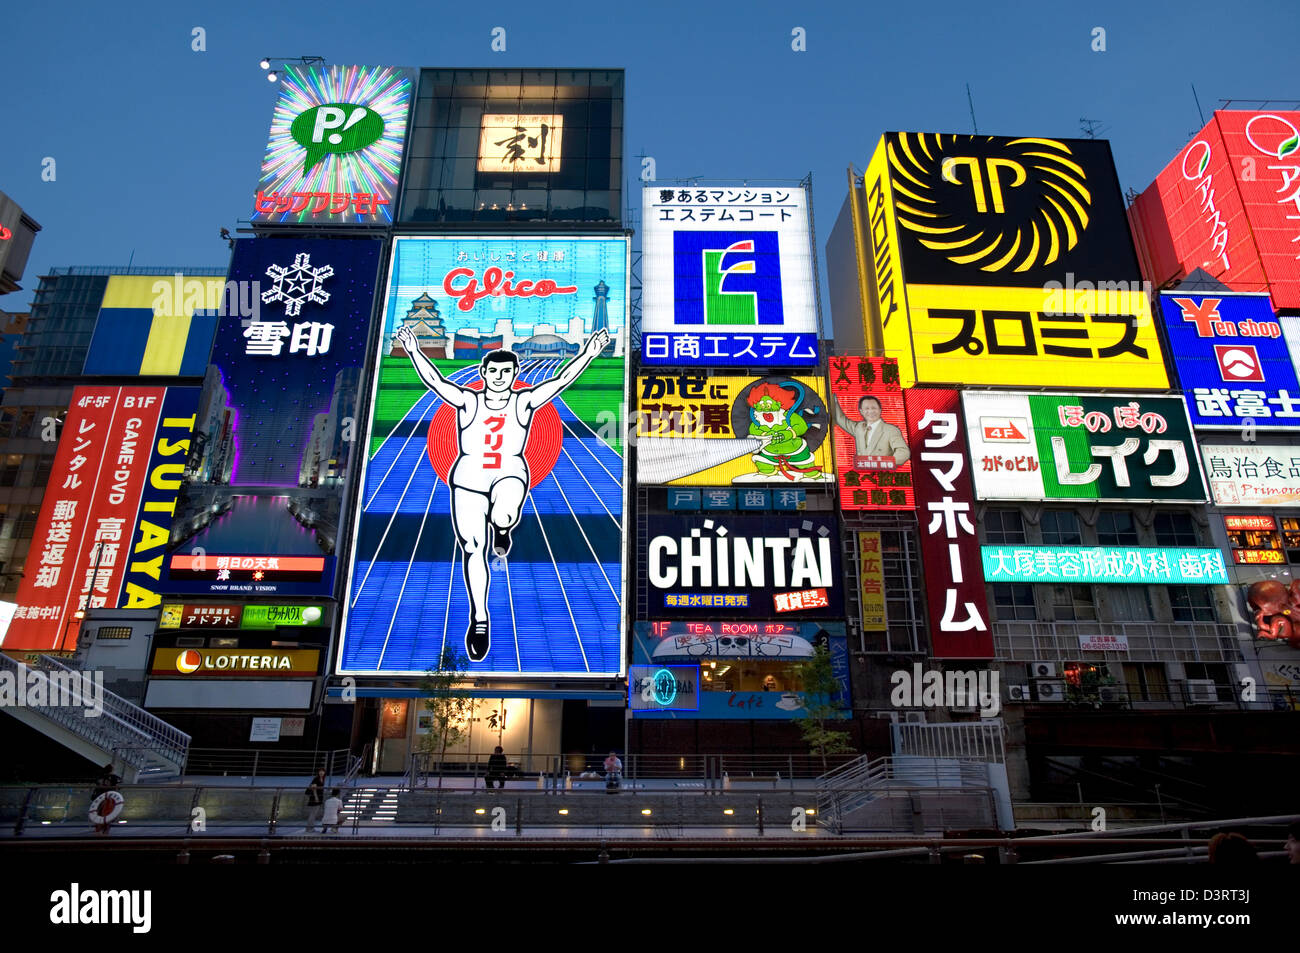 Les panneaux publicitaires de la soi-disant 'Neon' dans la paroi du quartier de divertissements de Dotonbori Osaka Namba, ajouter à l'atmosphère nocturne Banque D'Images